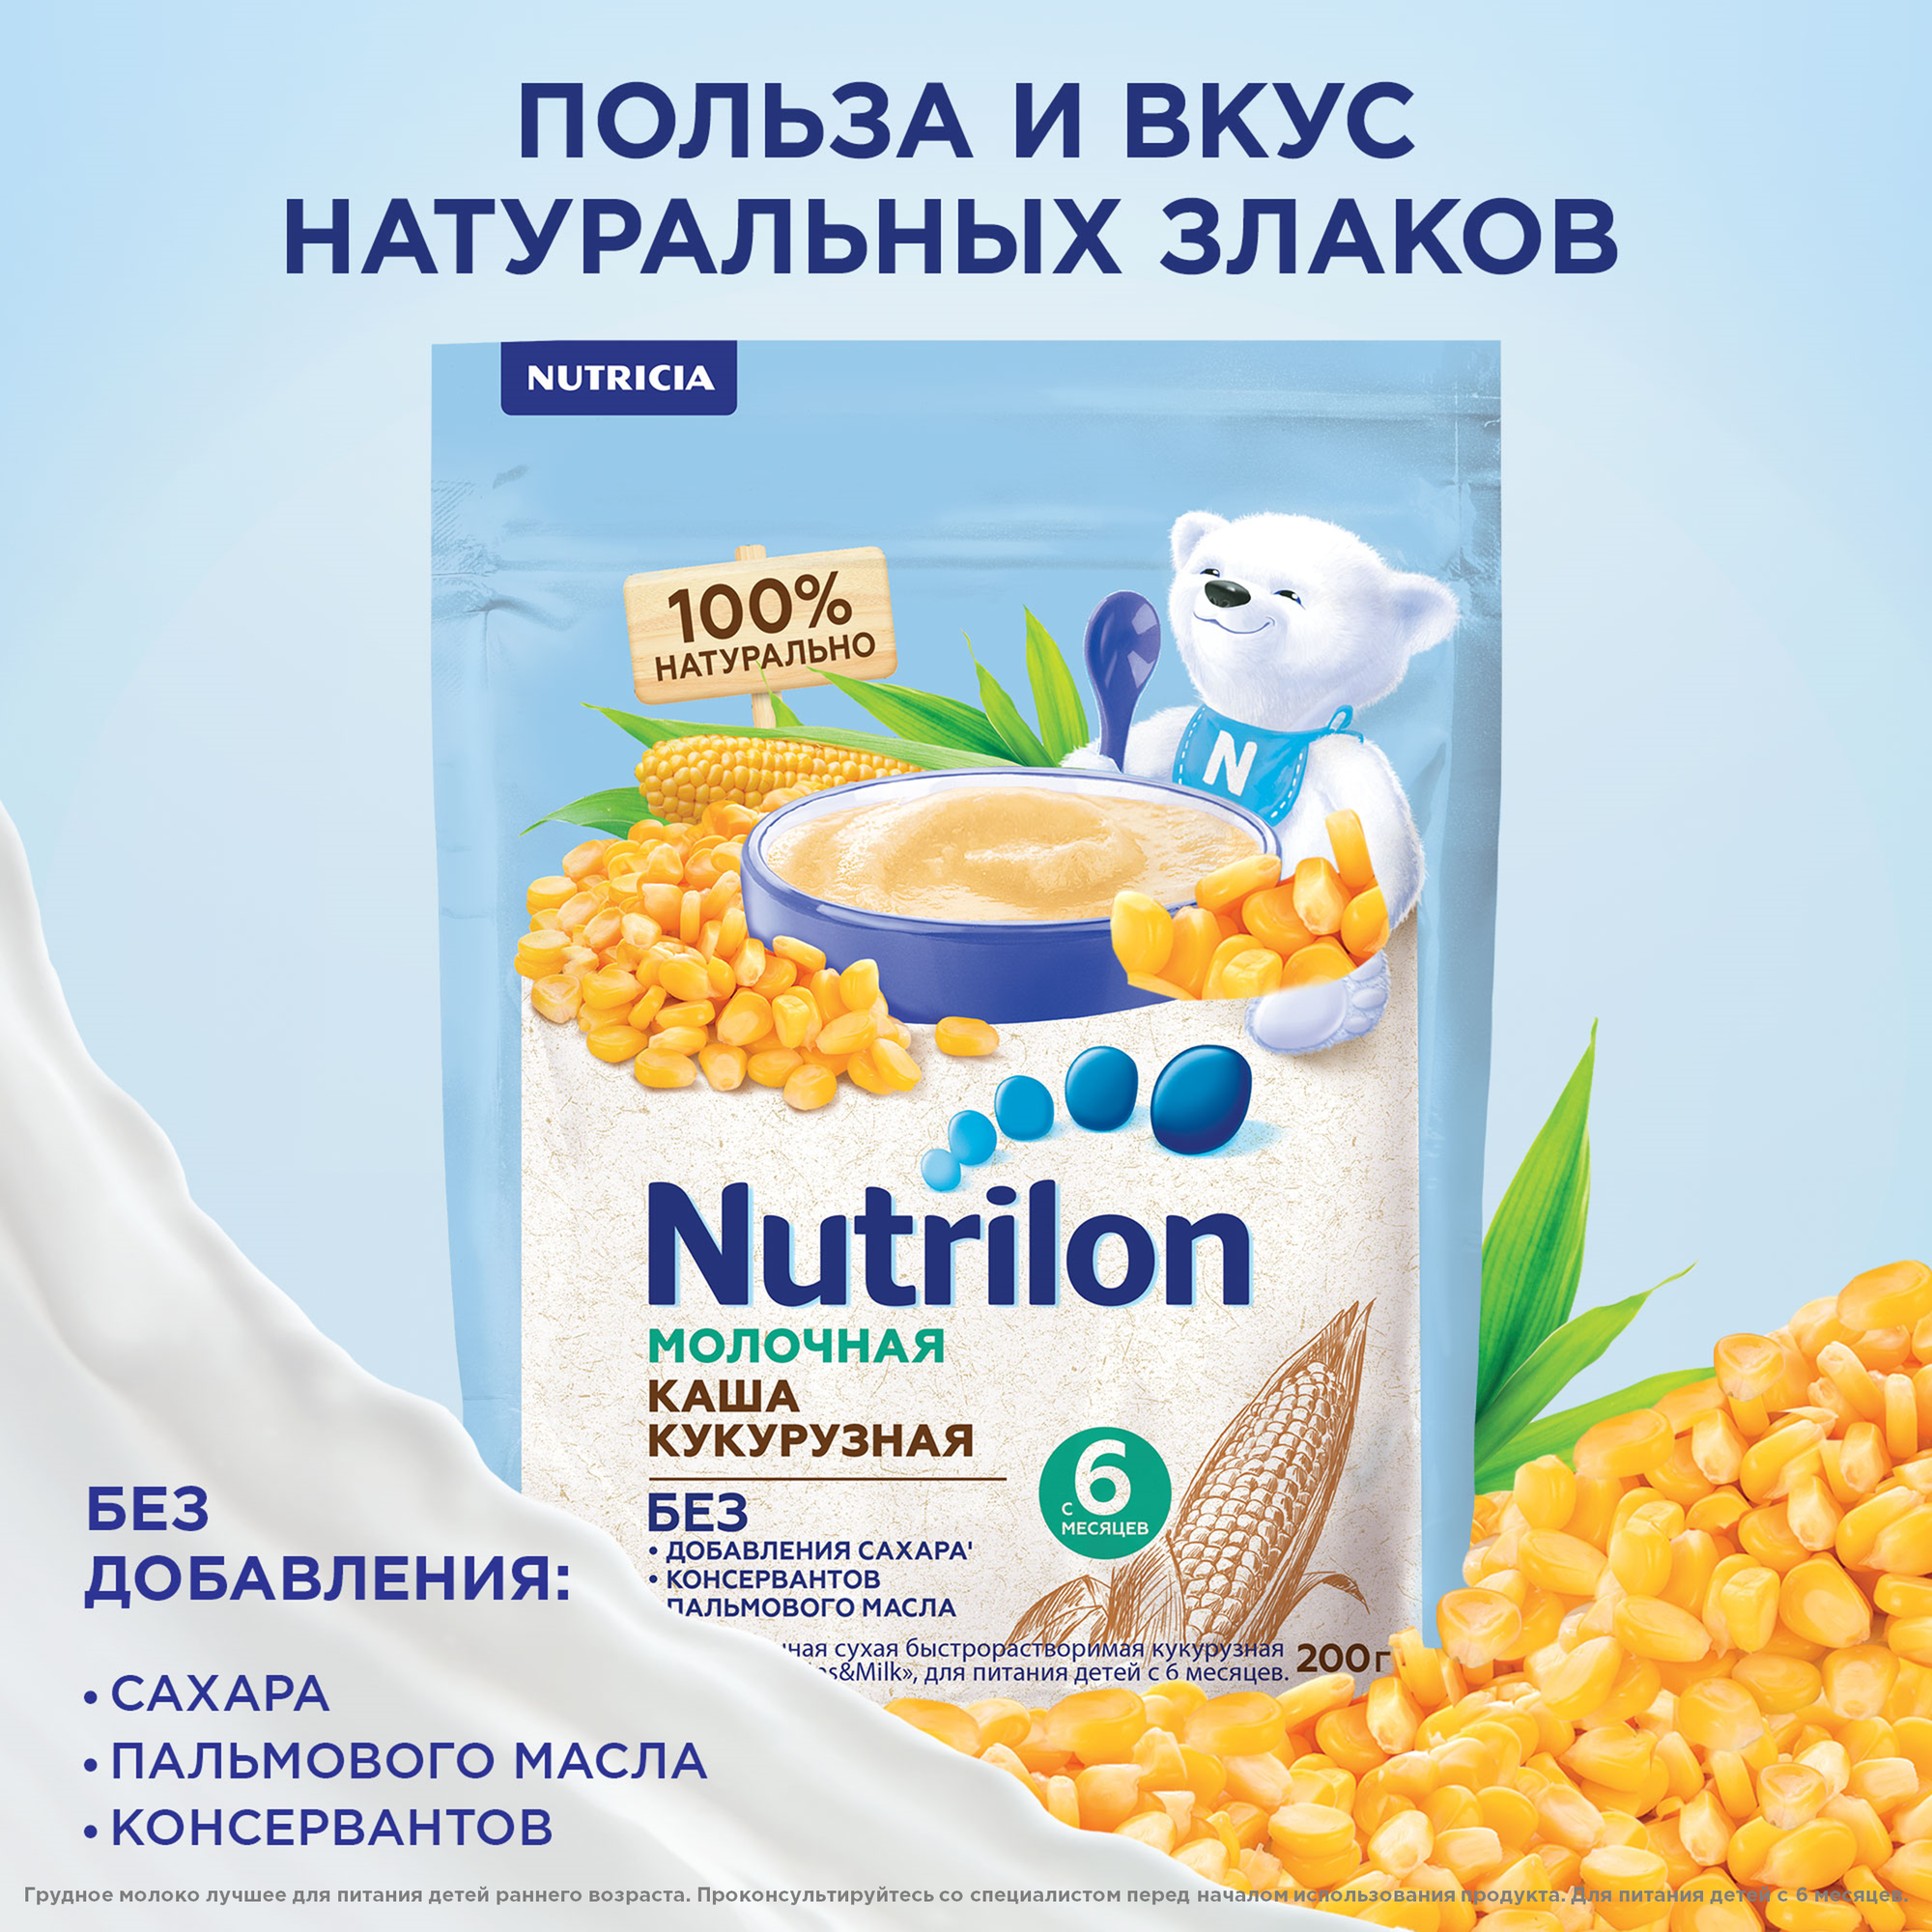 Каша Nutrilon молочная кукурузная, 200гр - фото №4